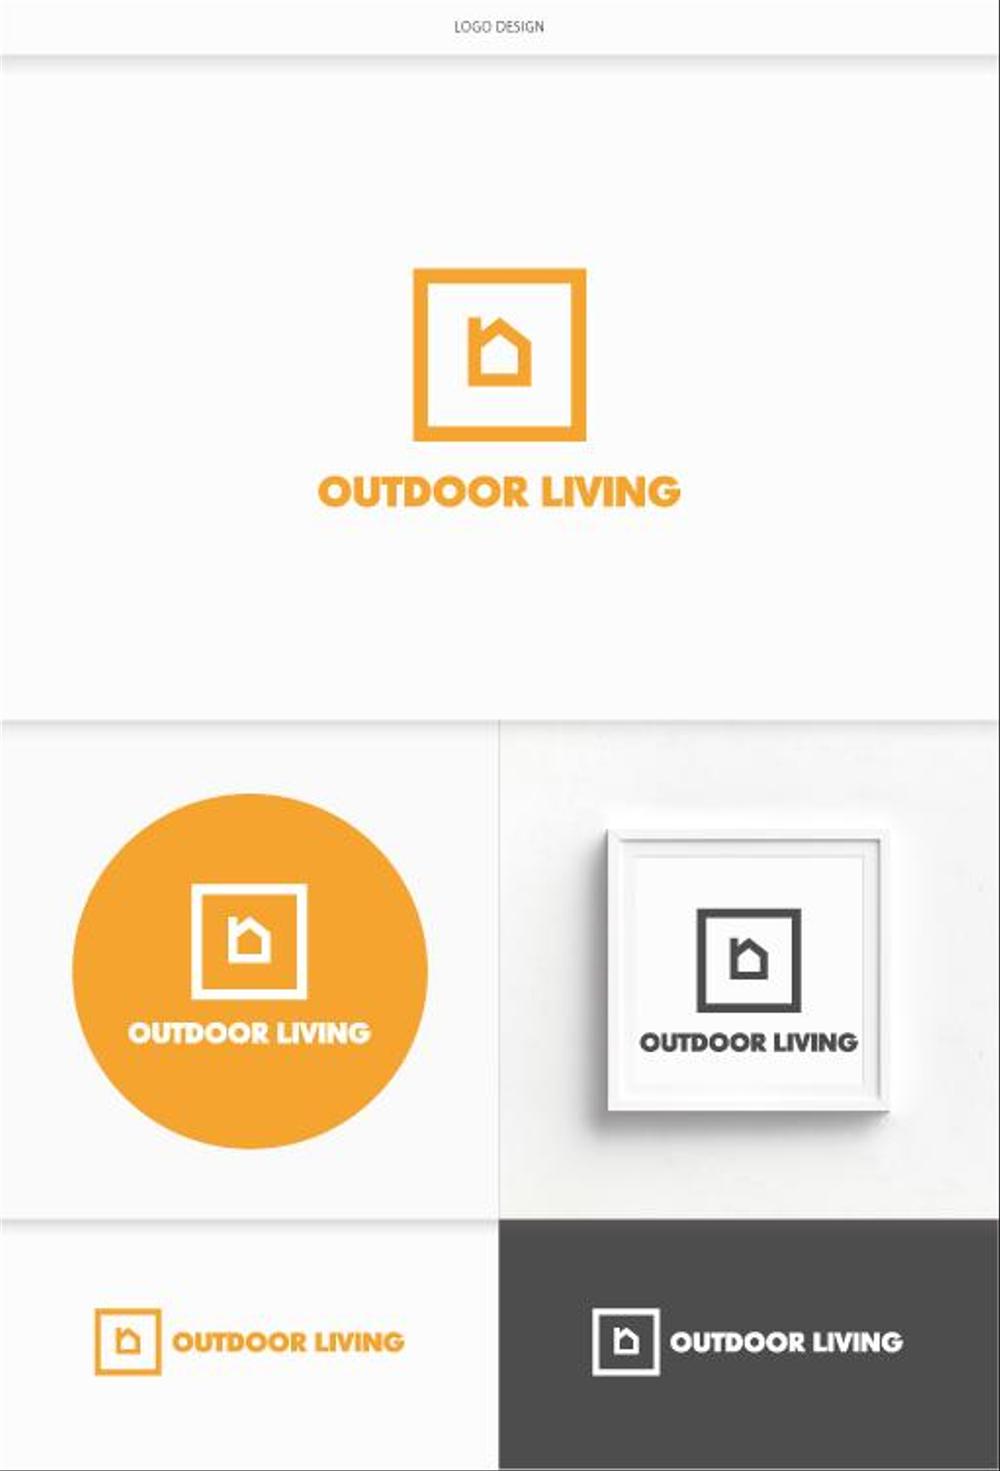 アウトドア施設の運営会社「株式会社OUTDOOR LIVING」のロゴ